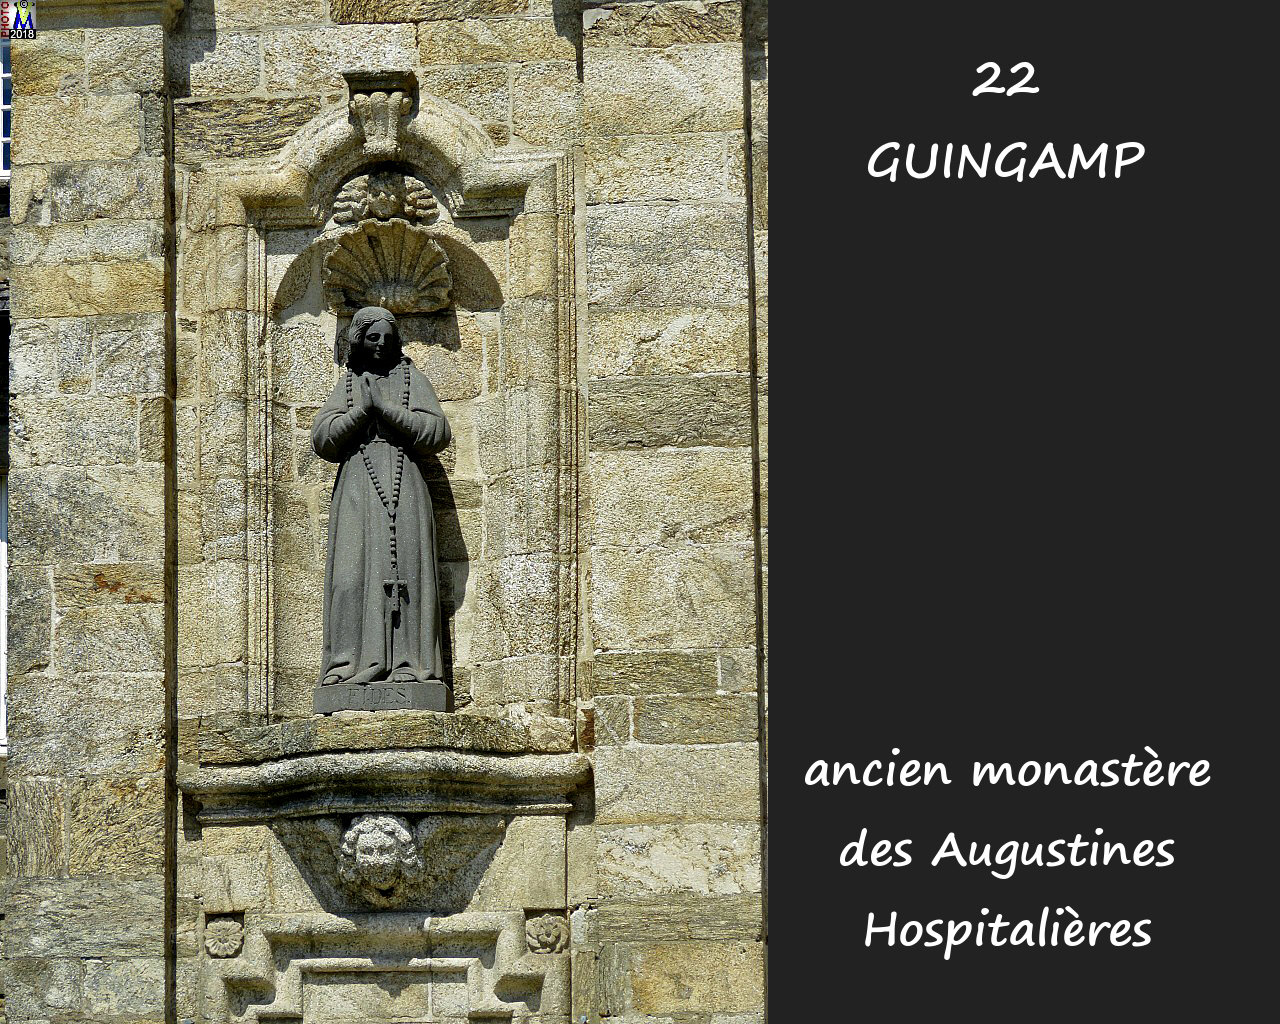 22GUINGAMP_monastereAH_122.jpg